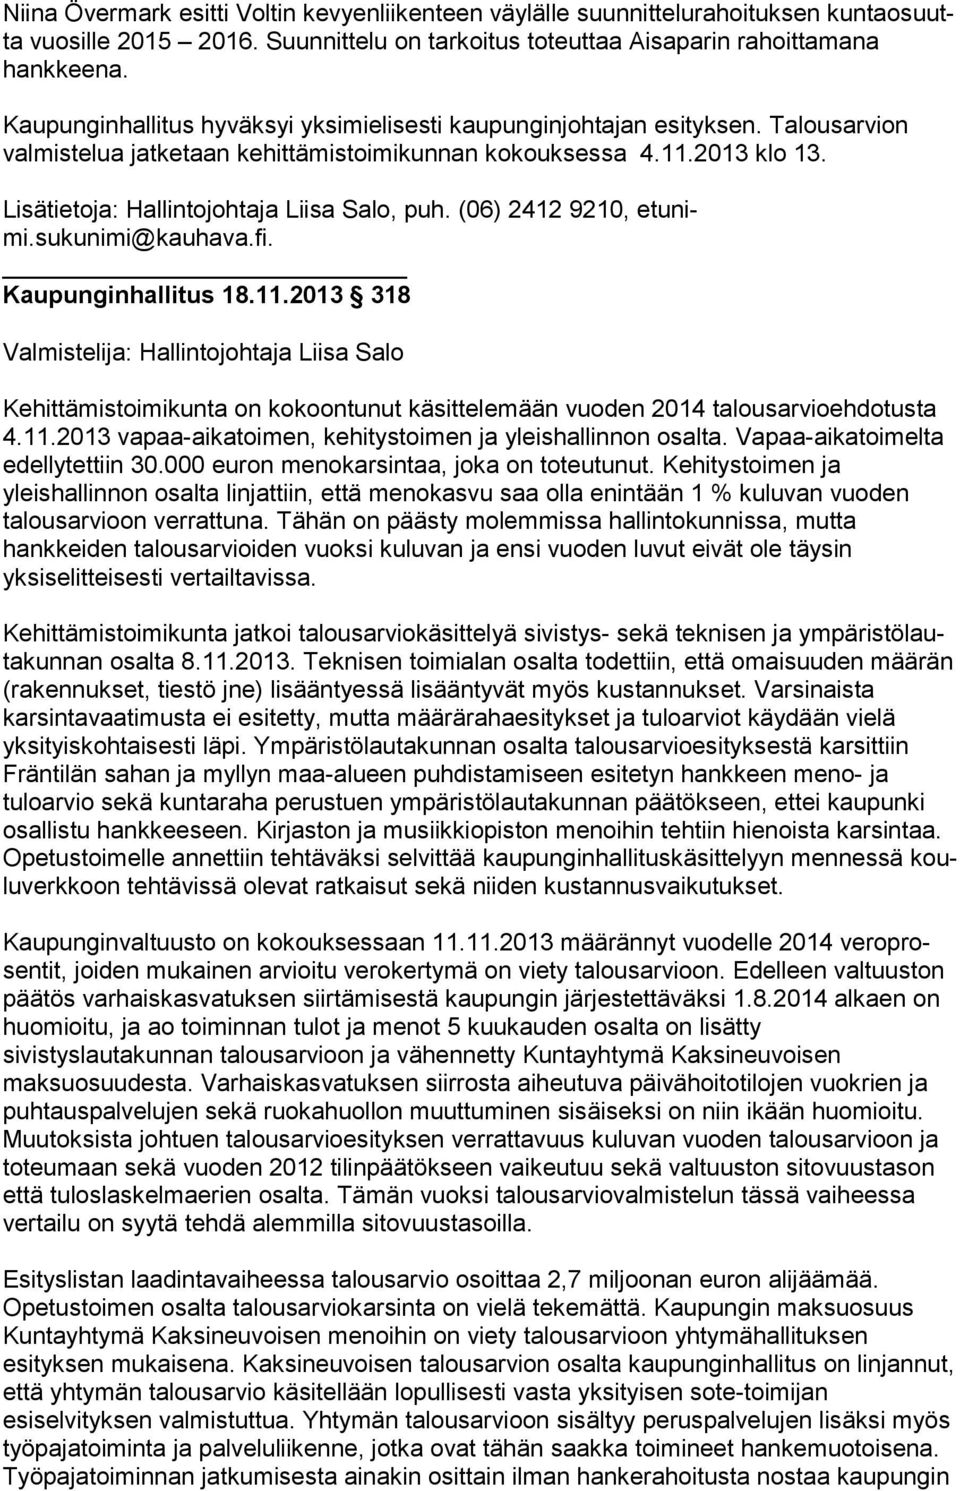 Lisätietoja: Hallintojohtaja Liisa Salo, puh. (06) 2412 9210, etu nimi.sukunimi@kauhava.fi. Kaupunginhallitus 18.11.